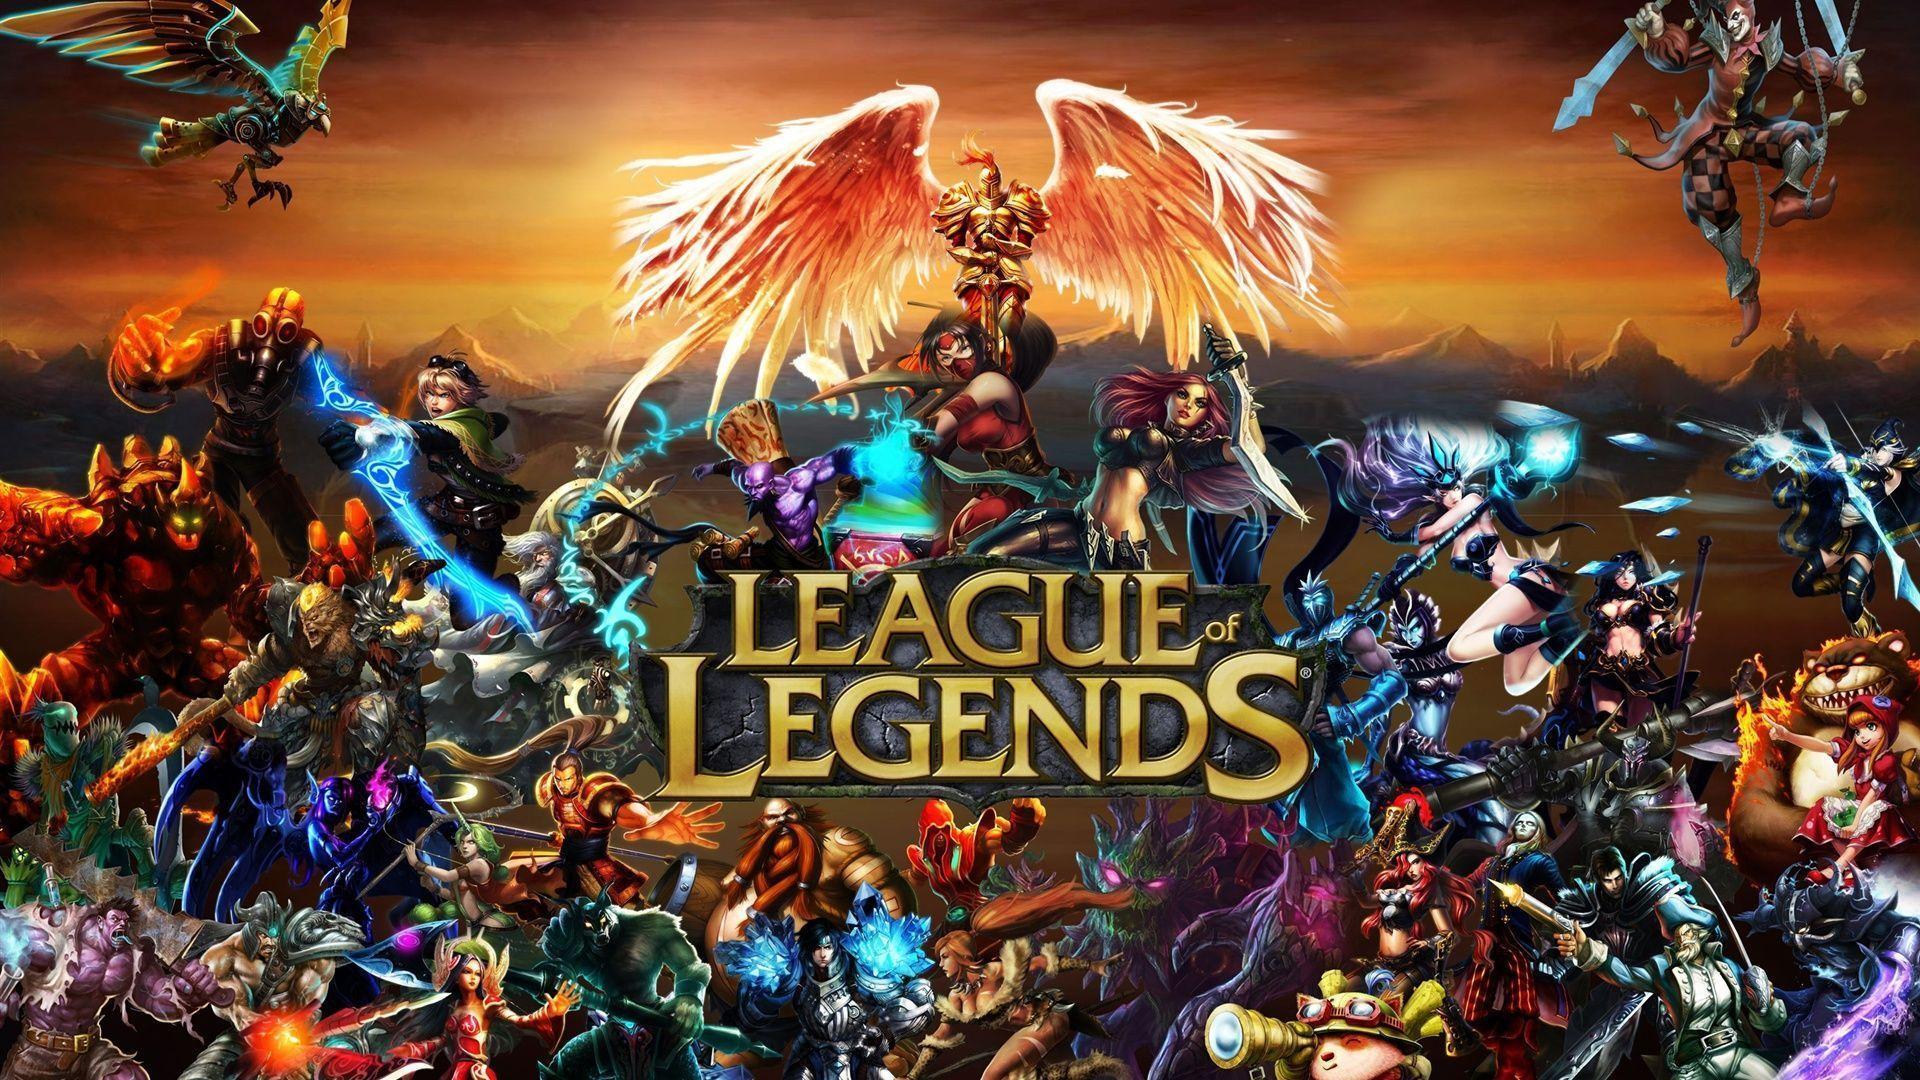 Fondos de pantalla de League of Legends.!